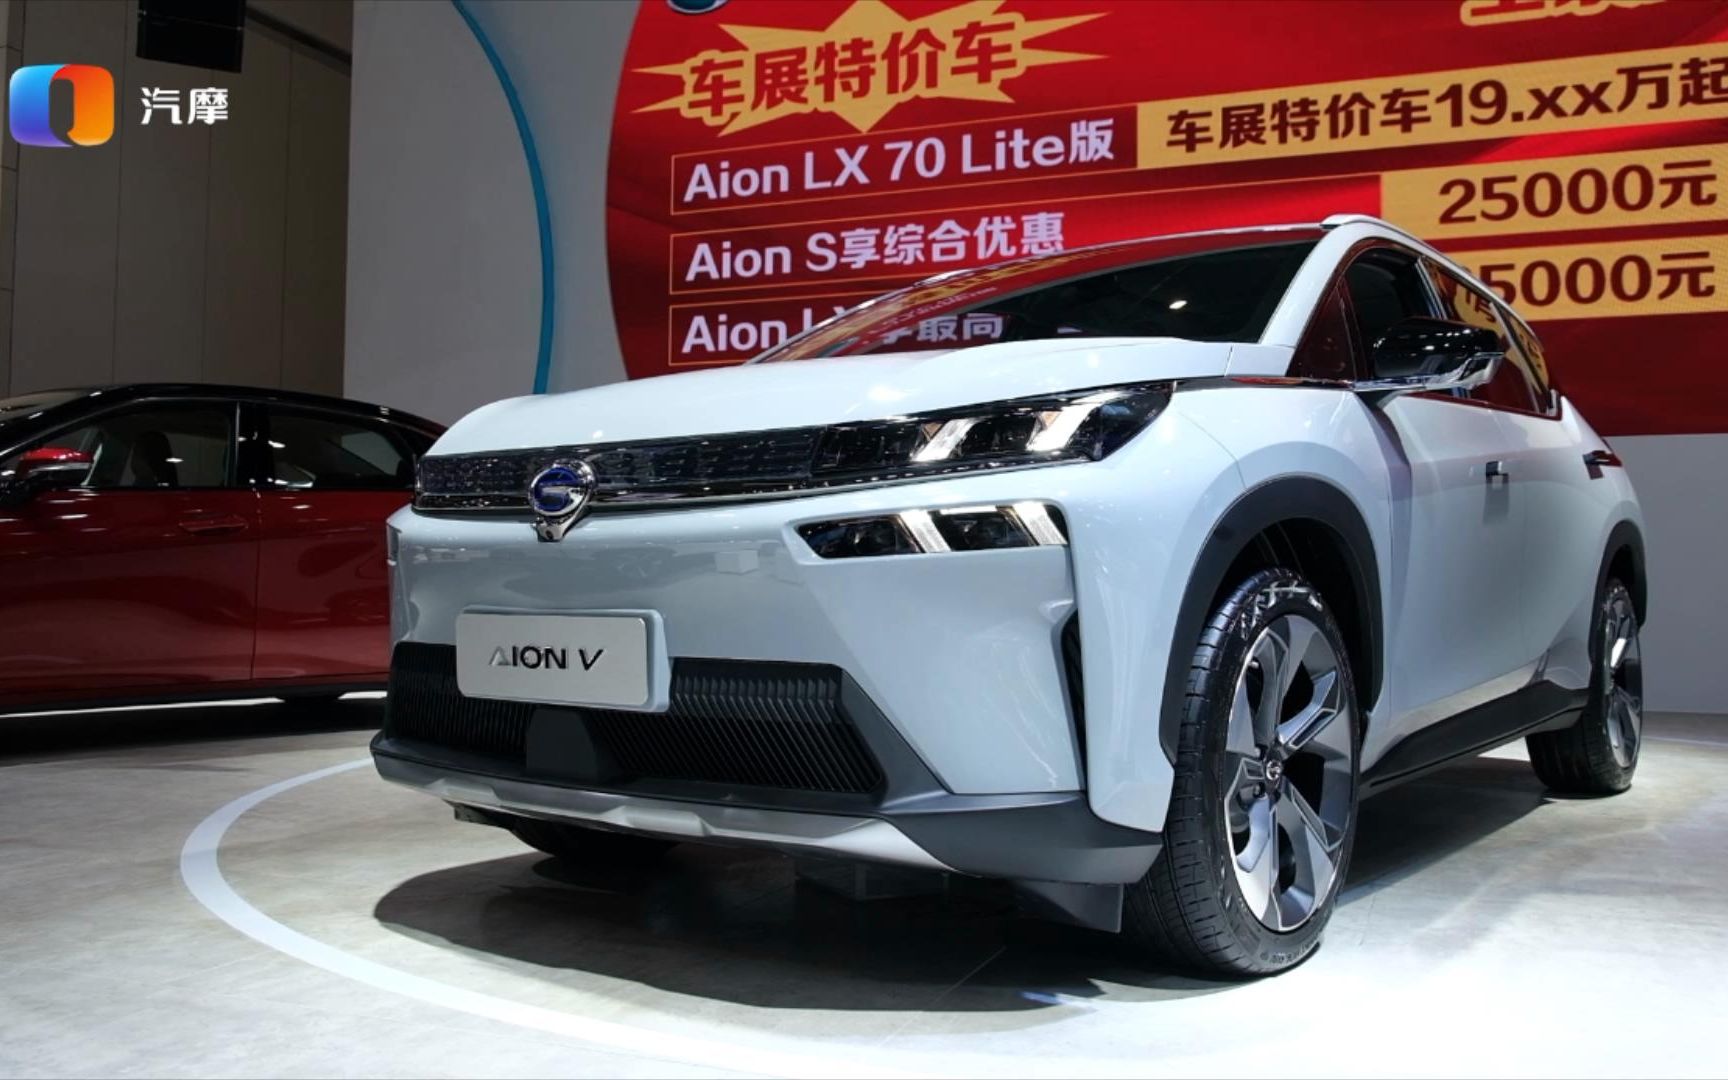 15.96万元起售 “下一代智能SUV”埃安V重庆上市